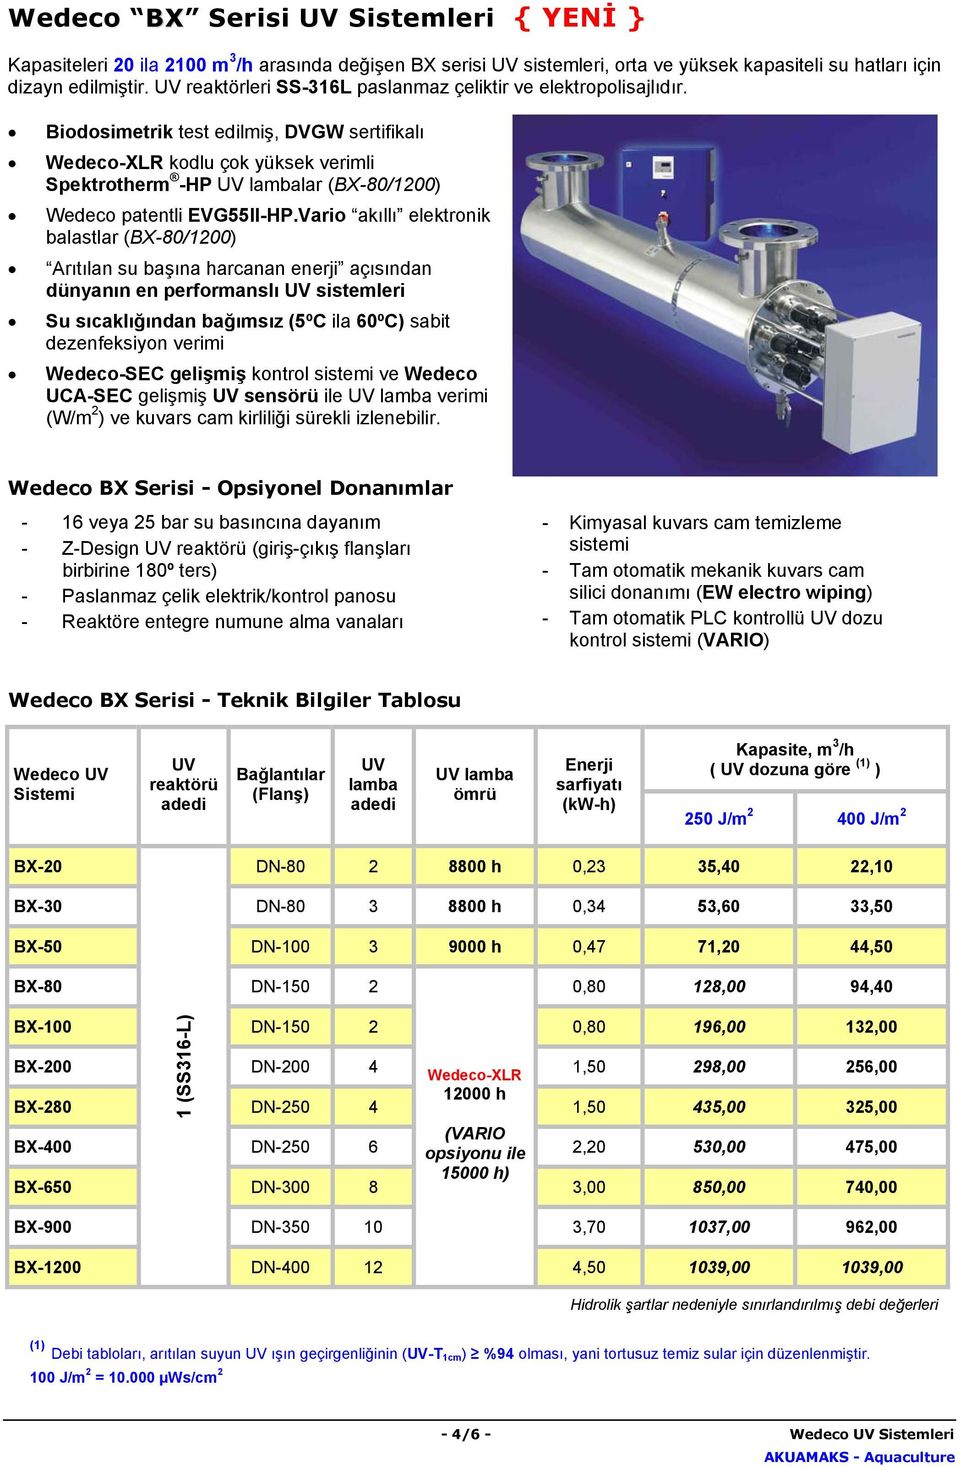 Biodosimetrik test edilmiş, DVGW sertifikalı Wedeco-XLR kodlu çok yüksek verimli Spektrotherm -HP lar (BX-80/1200) Wedeco patentli EVG55II-HP.